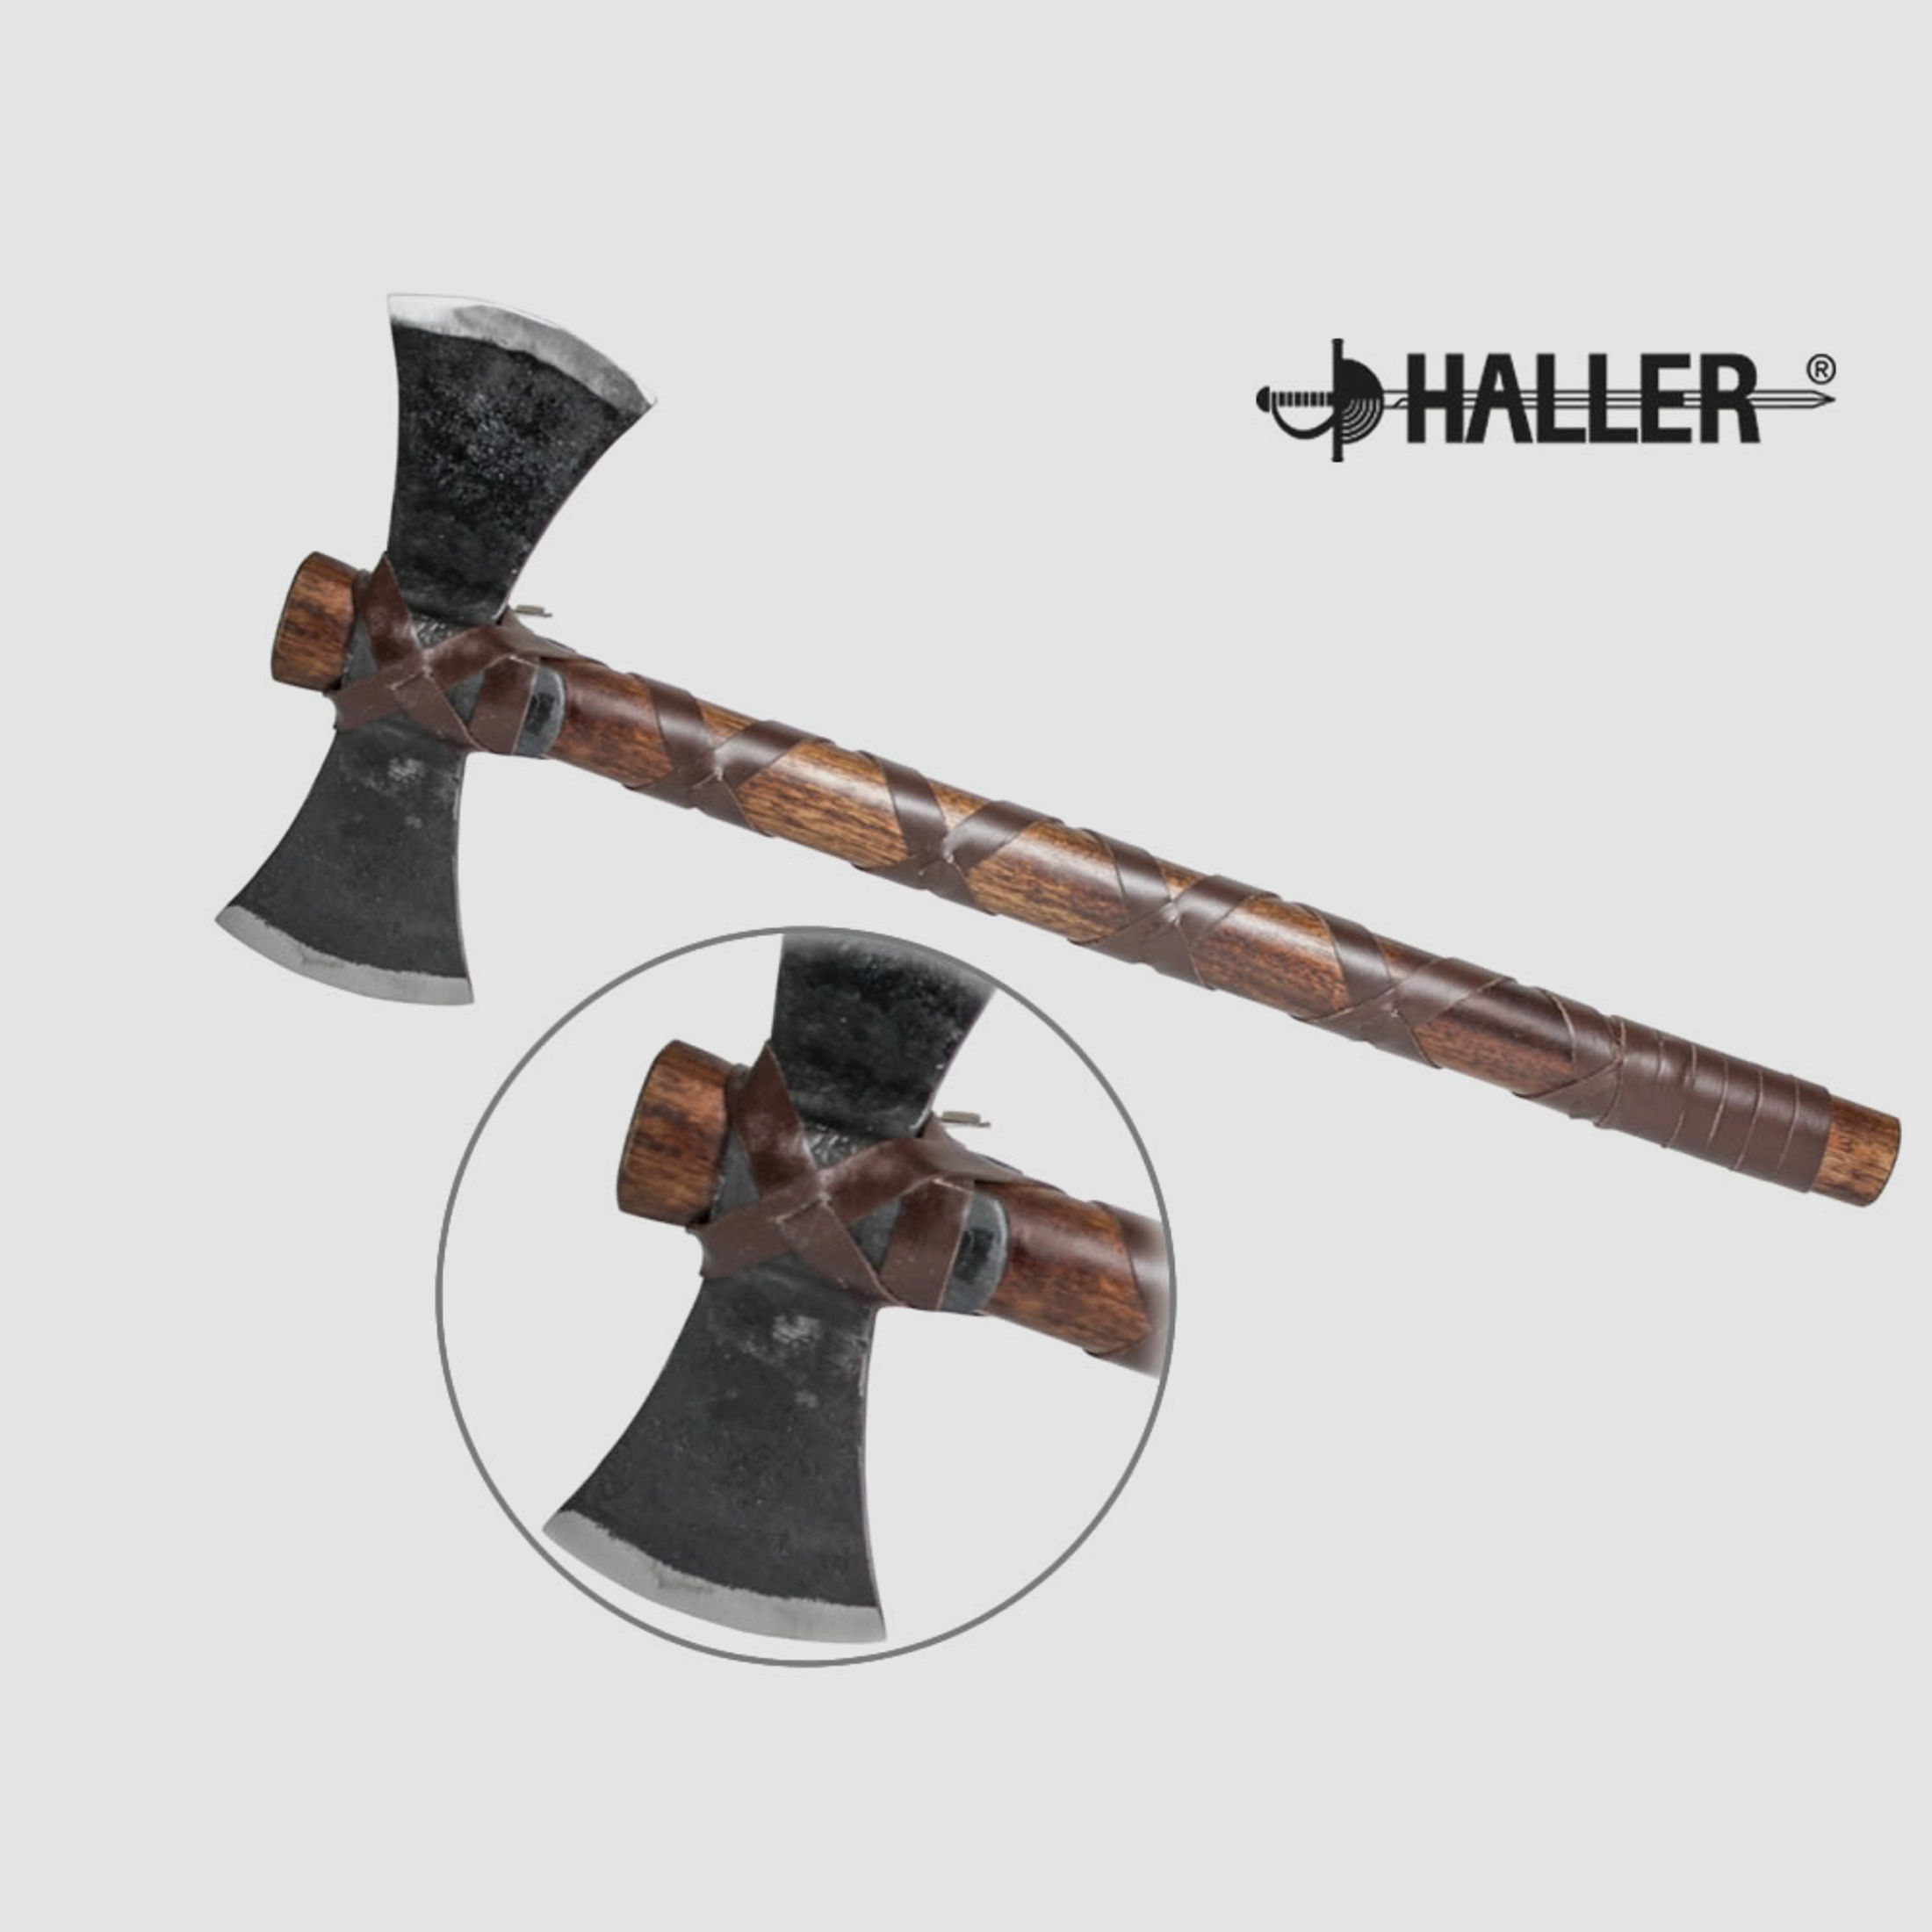 HALLER Doppelaxt, Wikinger, Blatt C-Stahl, Griff Holz, Lederwicklung, ca. 505 mm